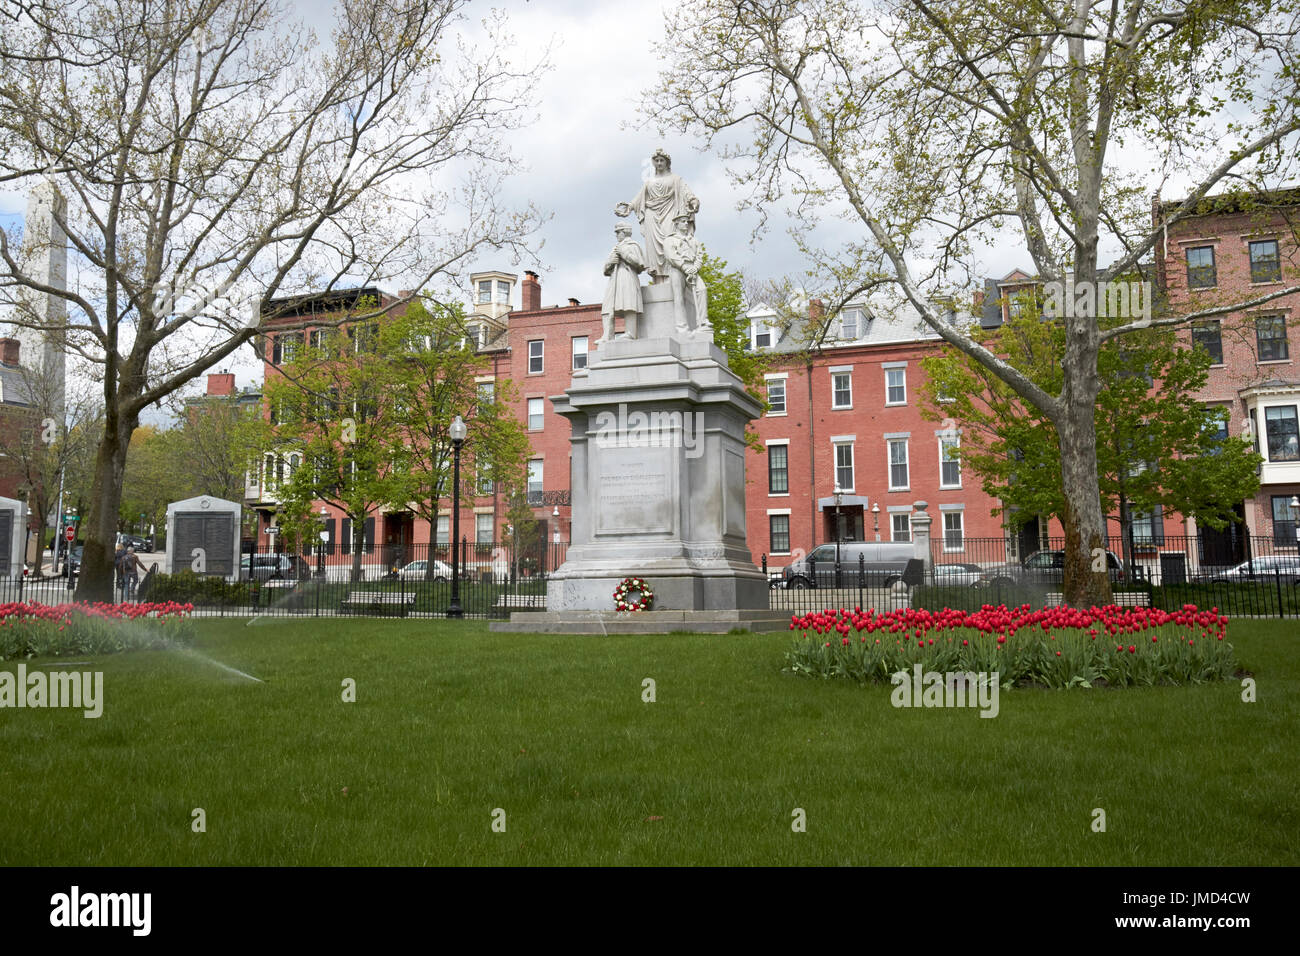 Monument aux hommes qui ont combattu dans la guerre de 1861 la guerre civile le domaine de la formation à winthrop square charlestown Boston USA Banque D'Images